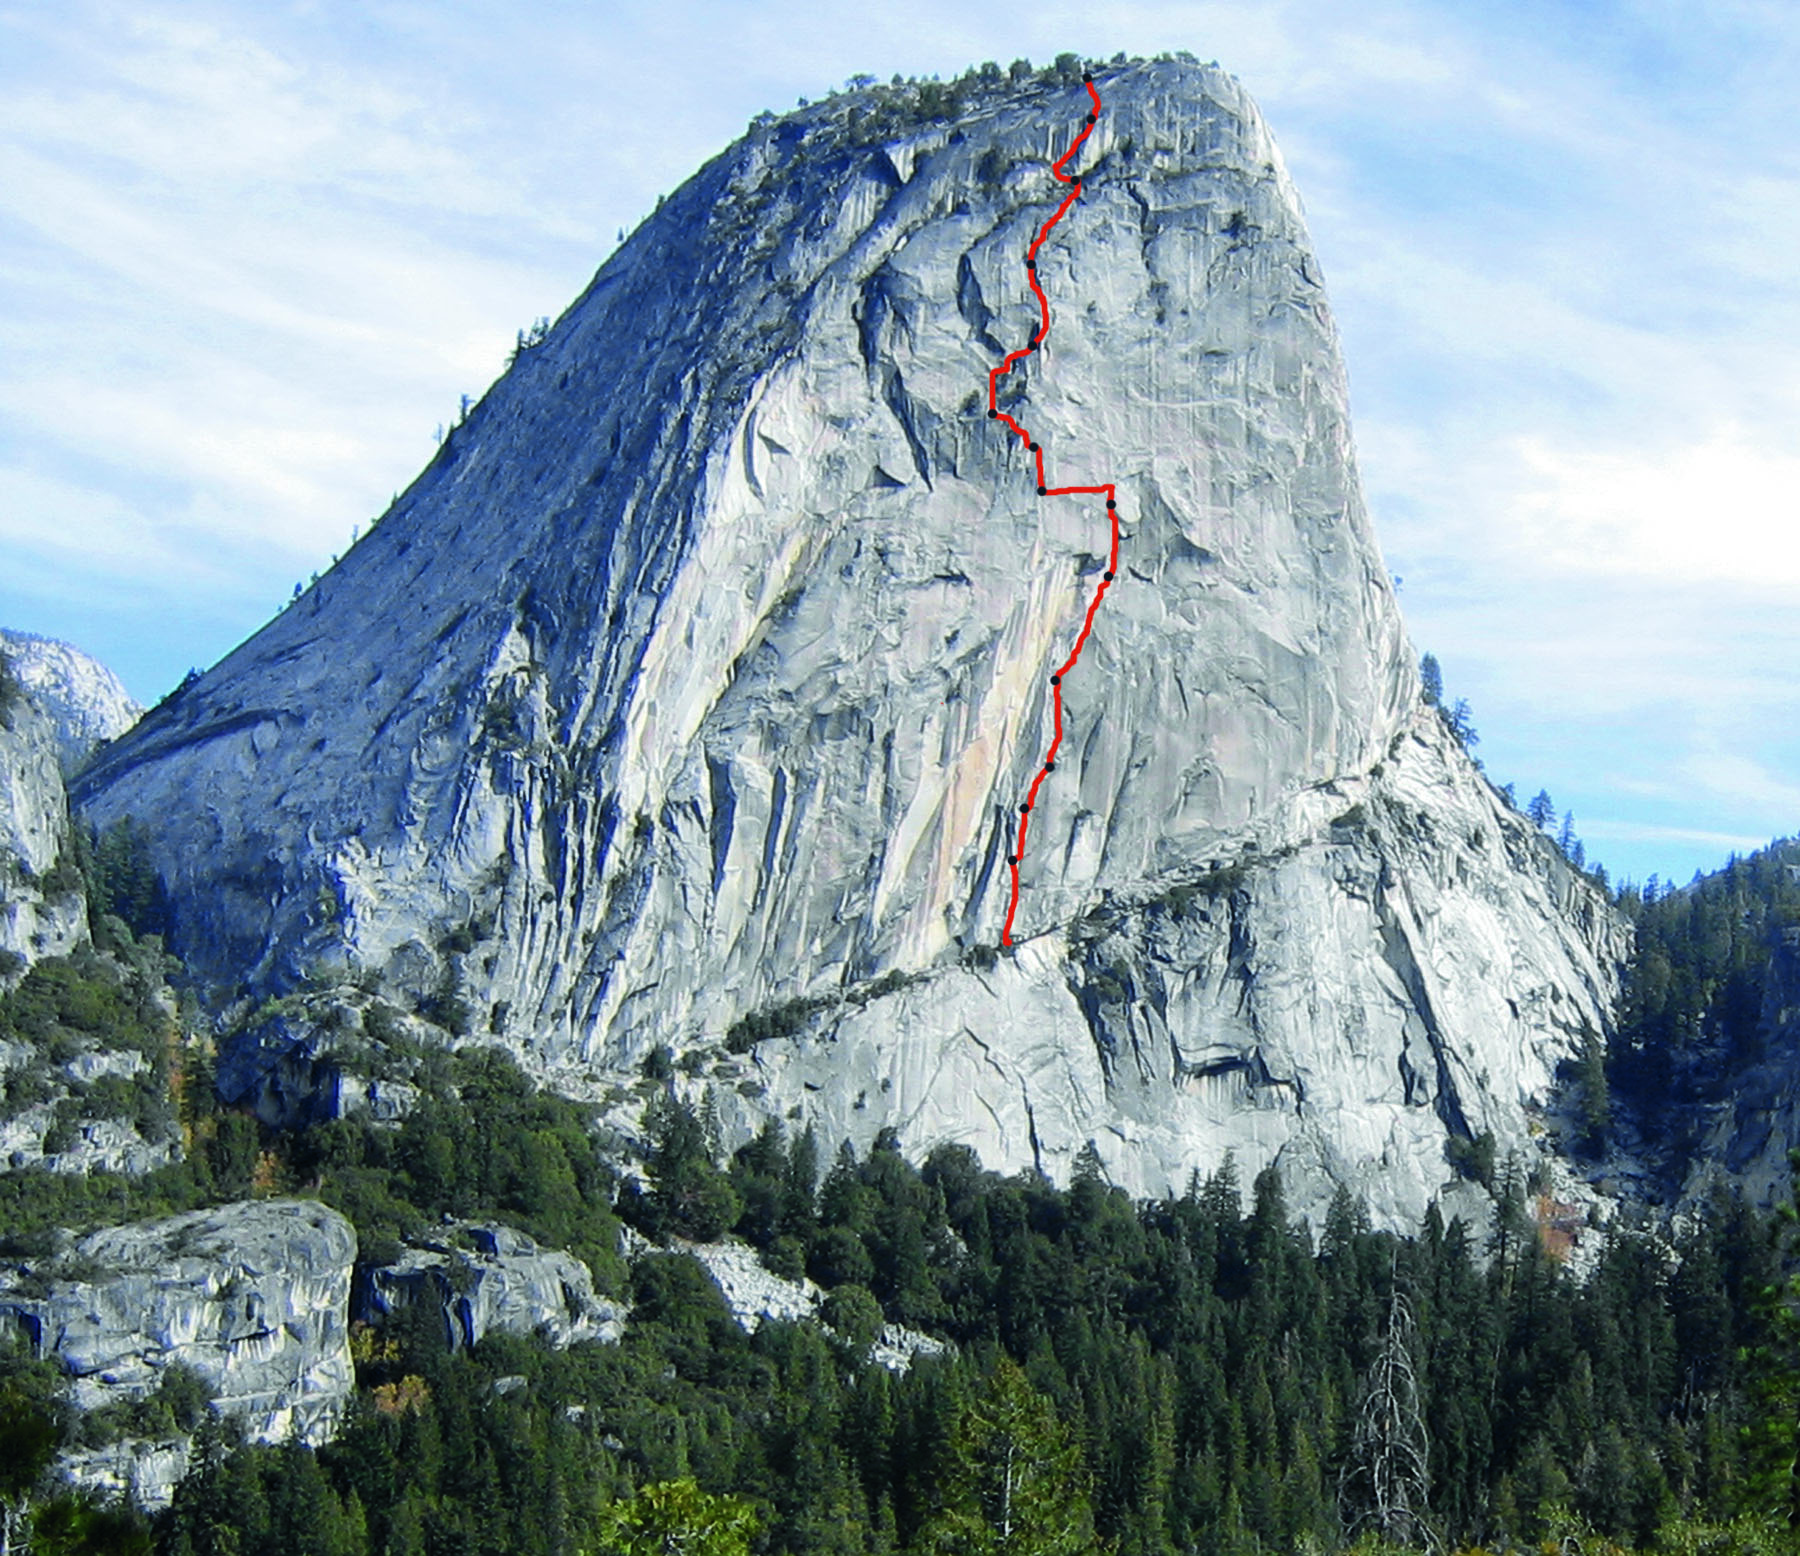 Новый маршрут "Mahtah", пройденный Цедар Райт (Cedar Wright) и Лучо Ривера (Lucho Rivera) на вершину "Liberty Cap", Йосемиты